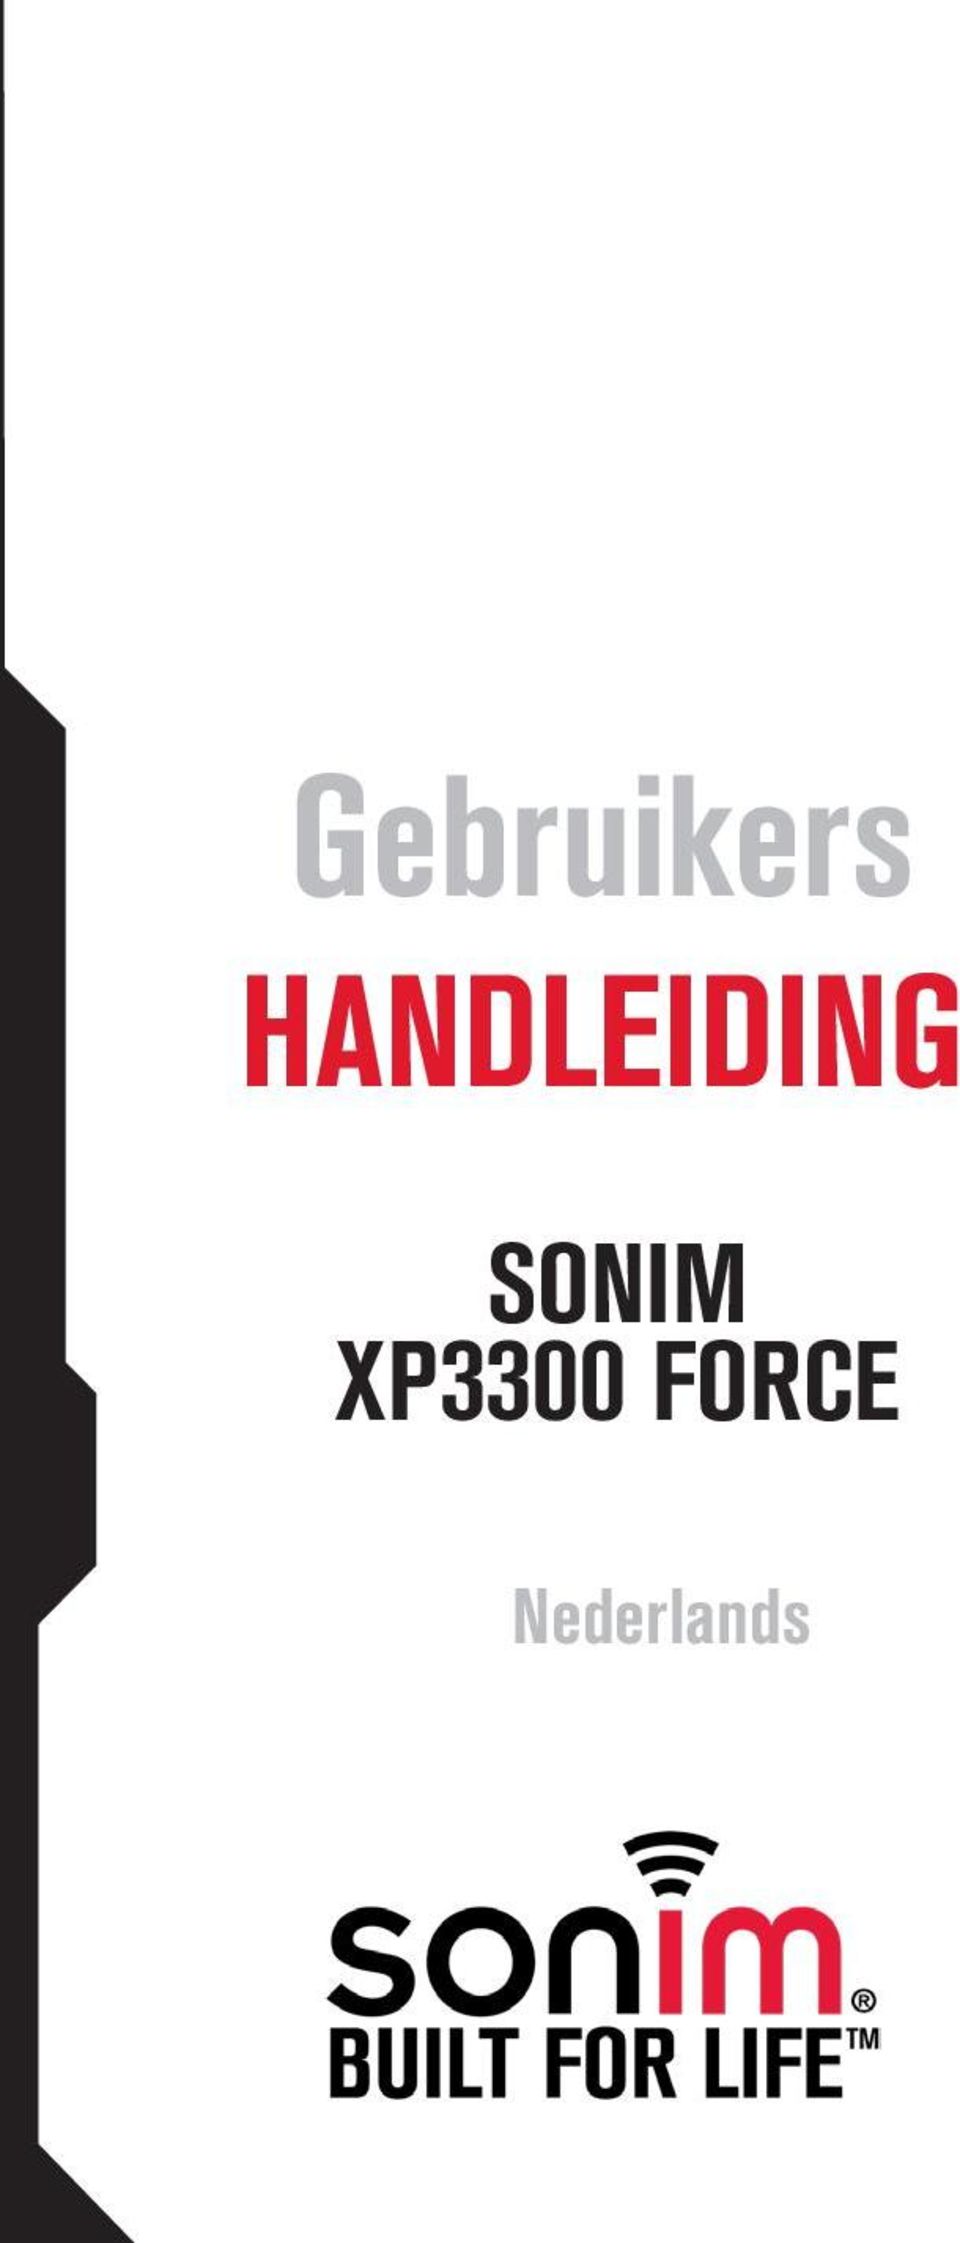 SONIM XP3300